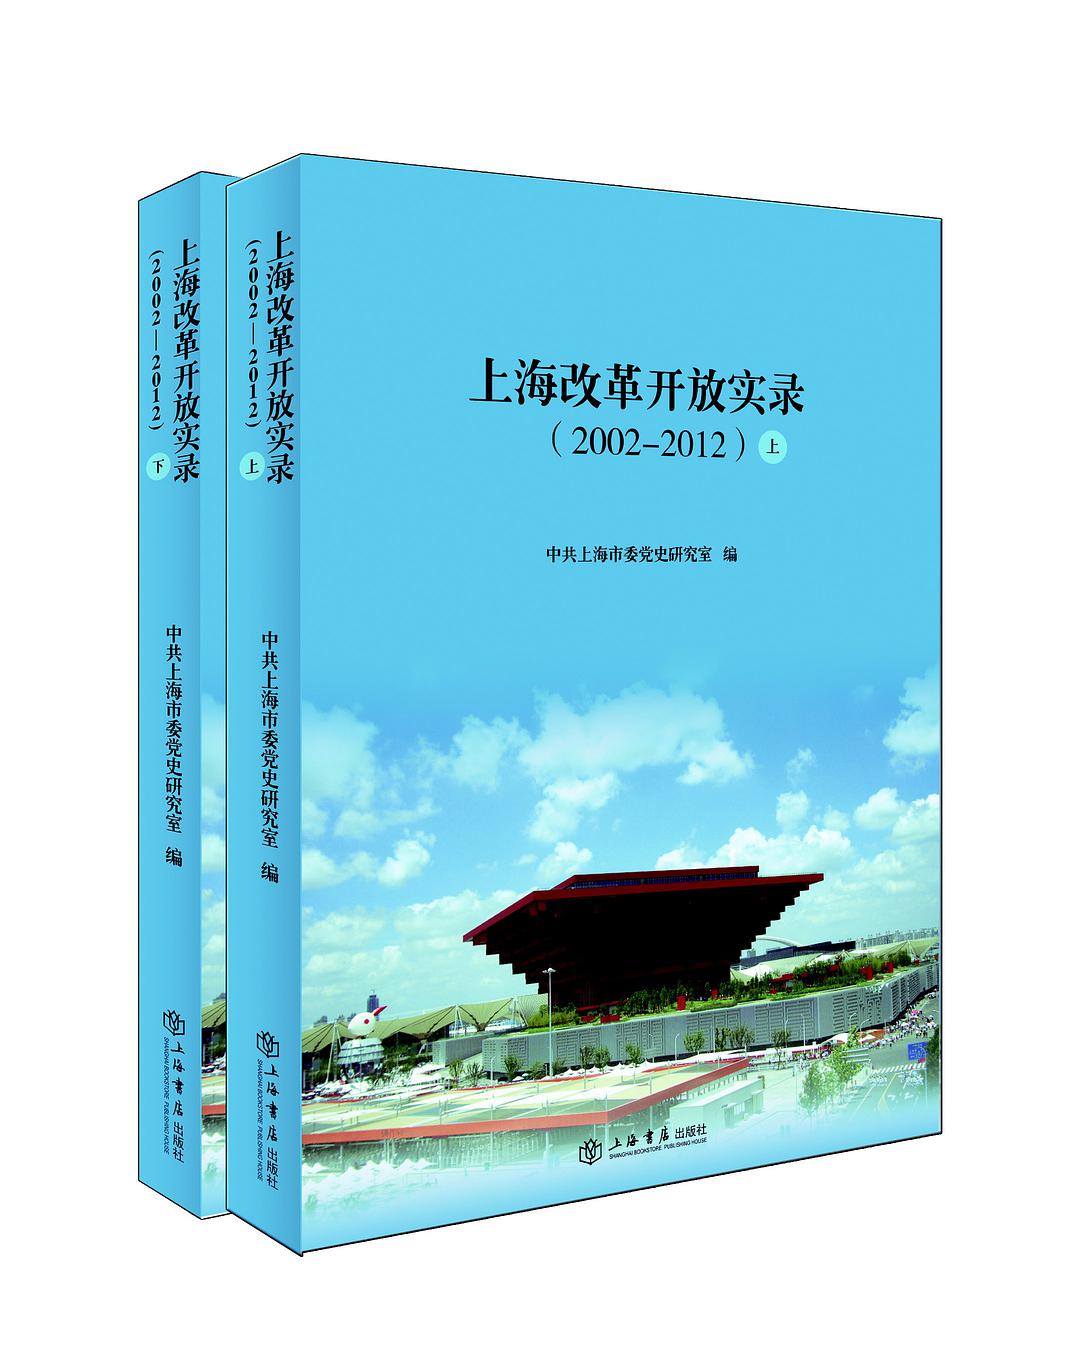 上海改革开放实录 2002-2012